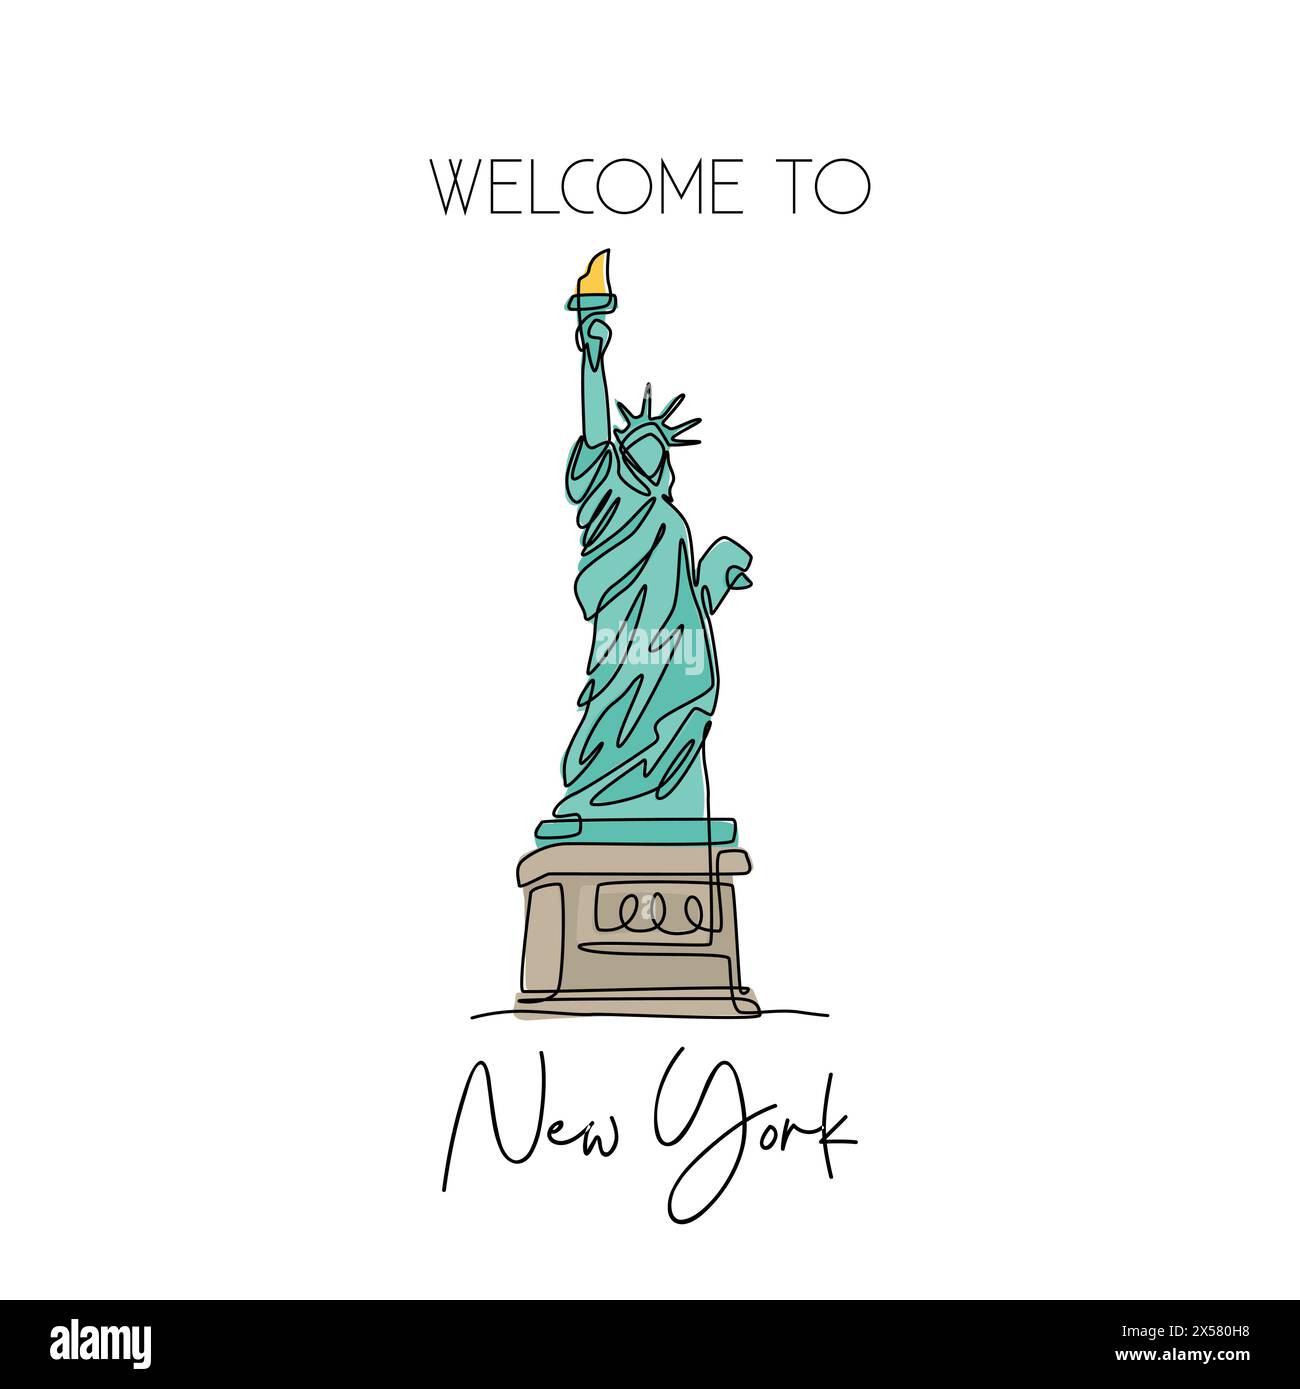 Eine durchgehende Linie zur Freiheitsstatue. Historischer, ikonischer Ort in New York, USA. Ferienwohnung Dekor Wandbild Posterdruck Konzept. Mo Stock Vektor